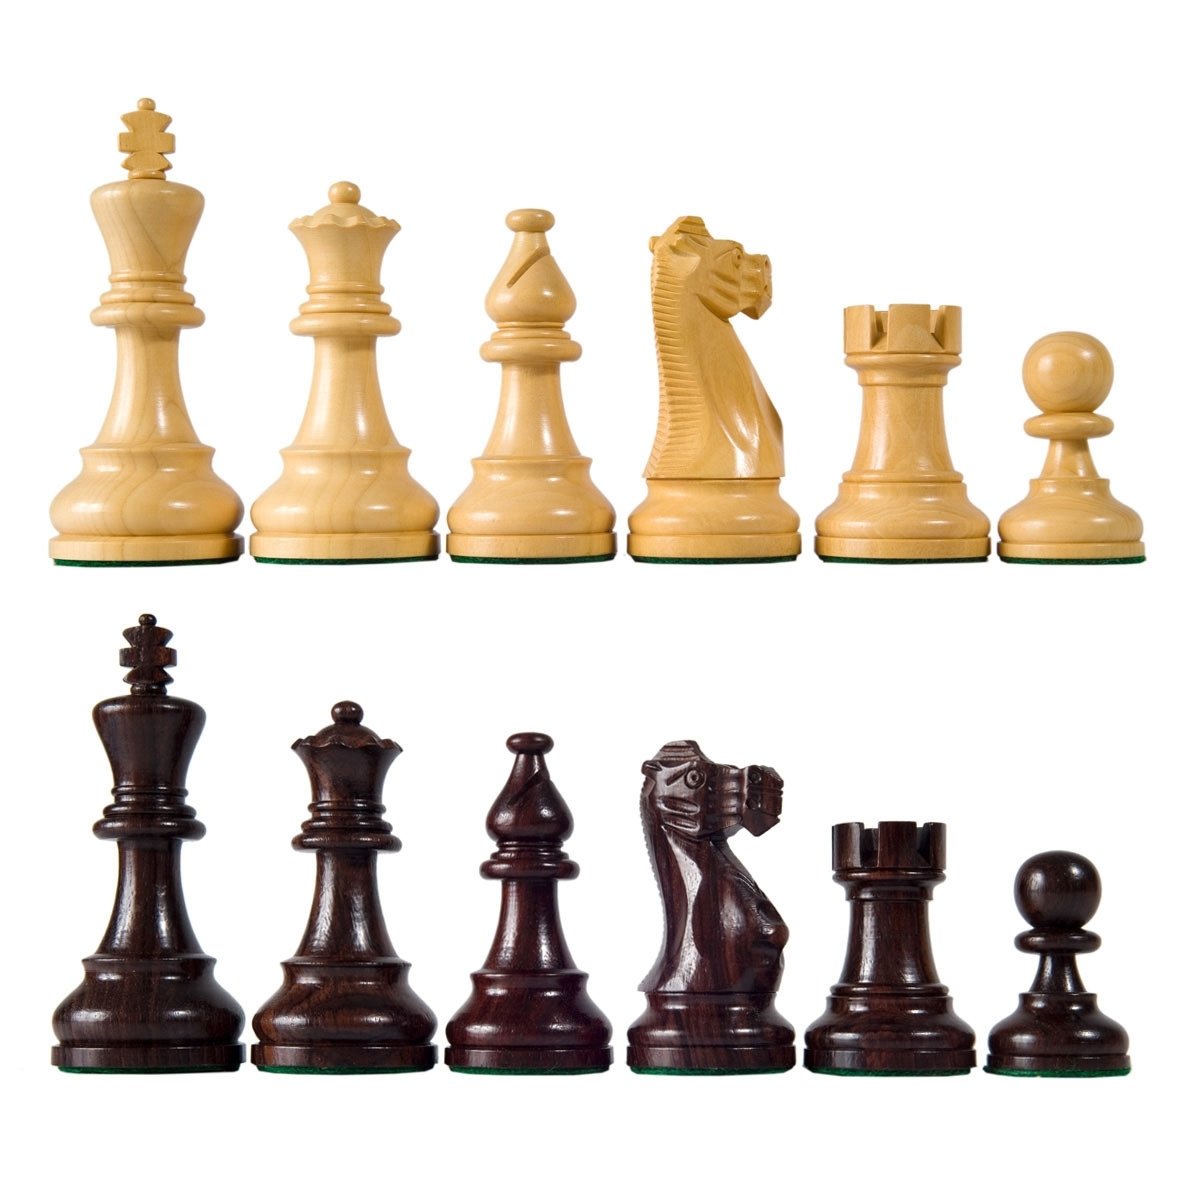 Девушка и шахматы